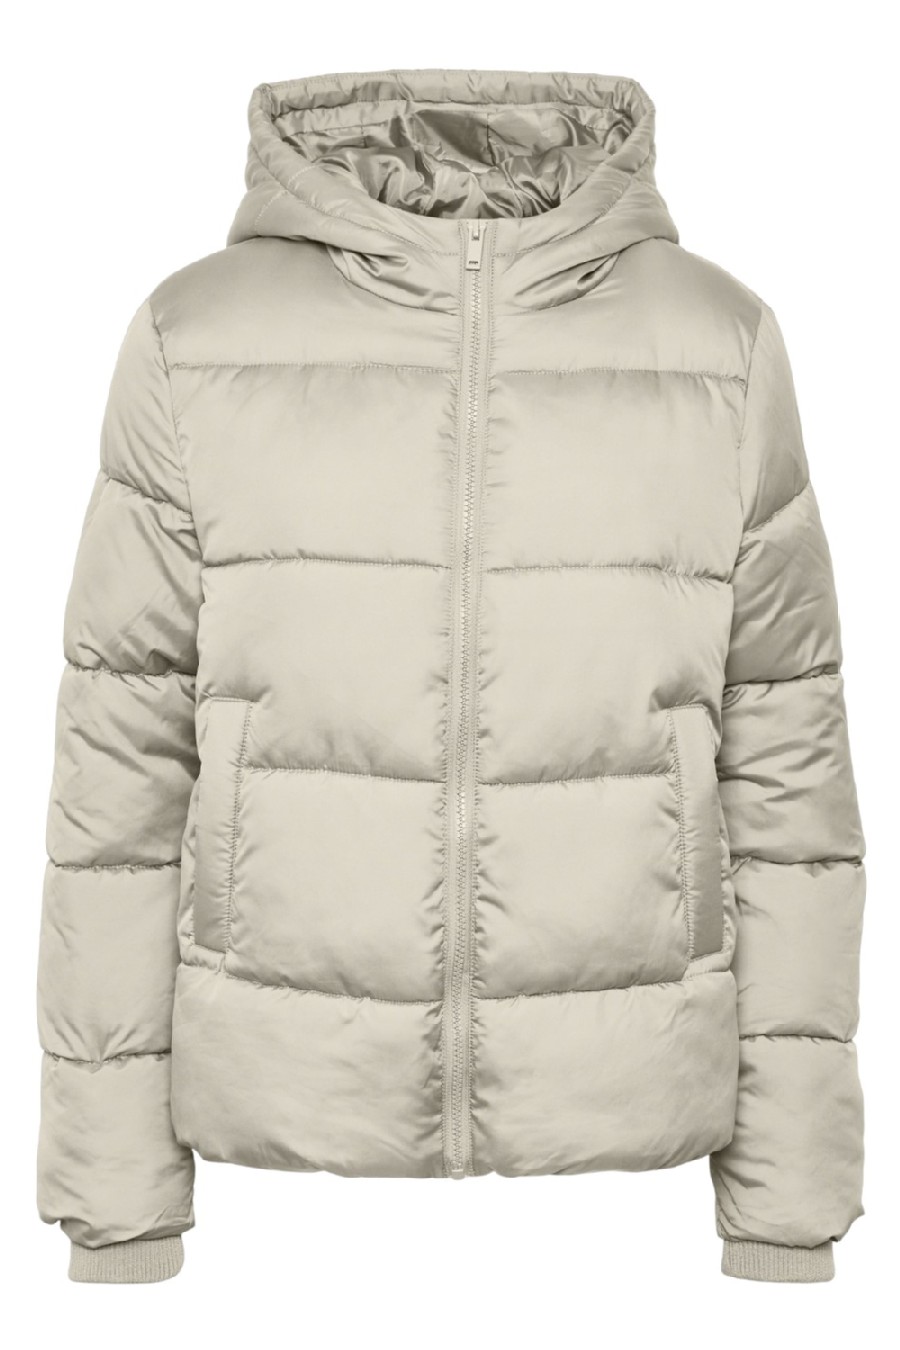 Winter jacket PIECES 17115626-Birch